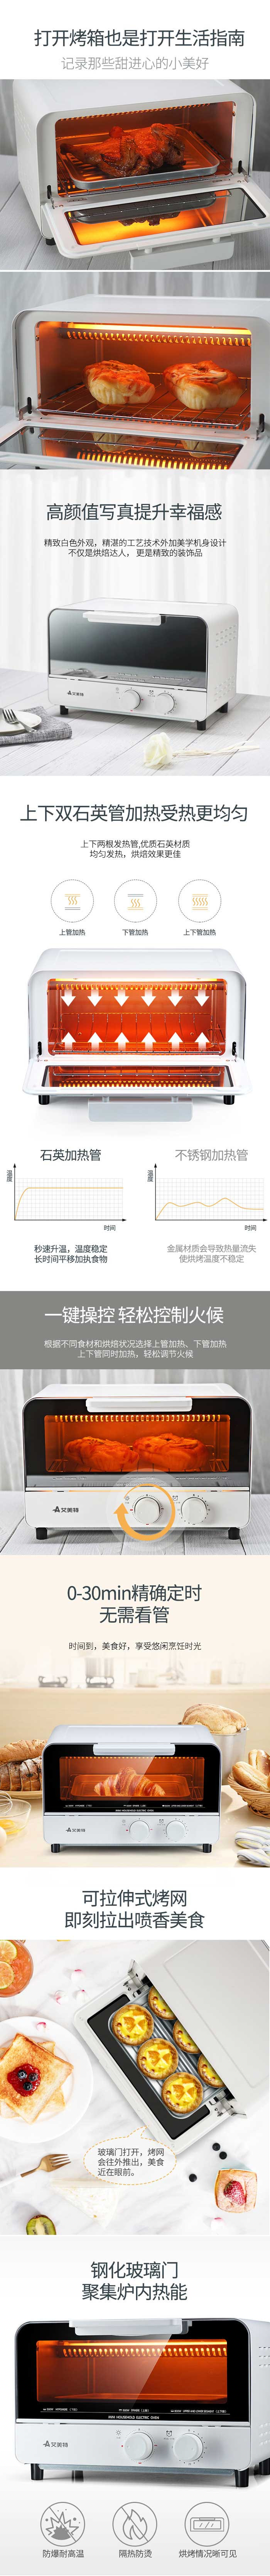 艾美特 家用多功能电烤箱12L容量锌铝板内腔材质专业烘焙 CK0801